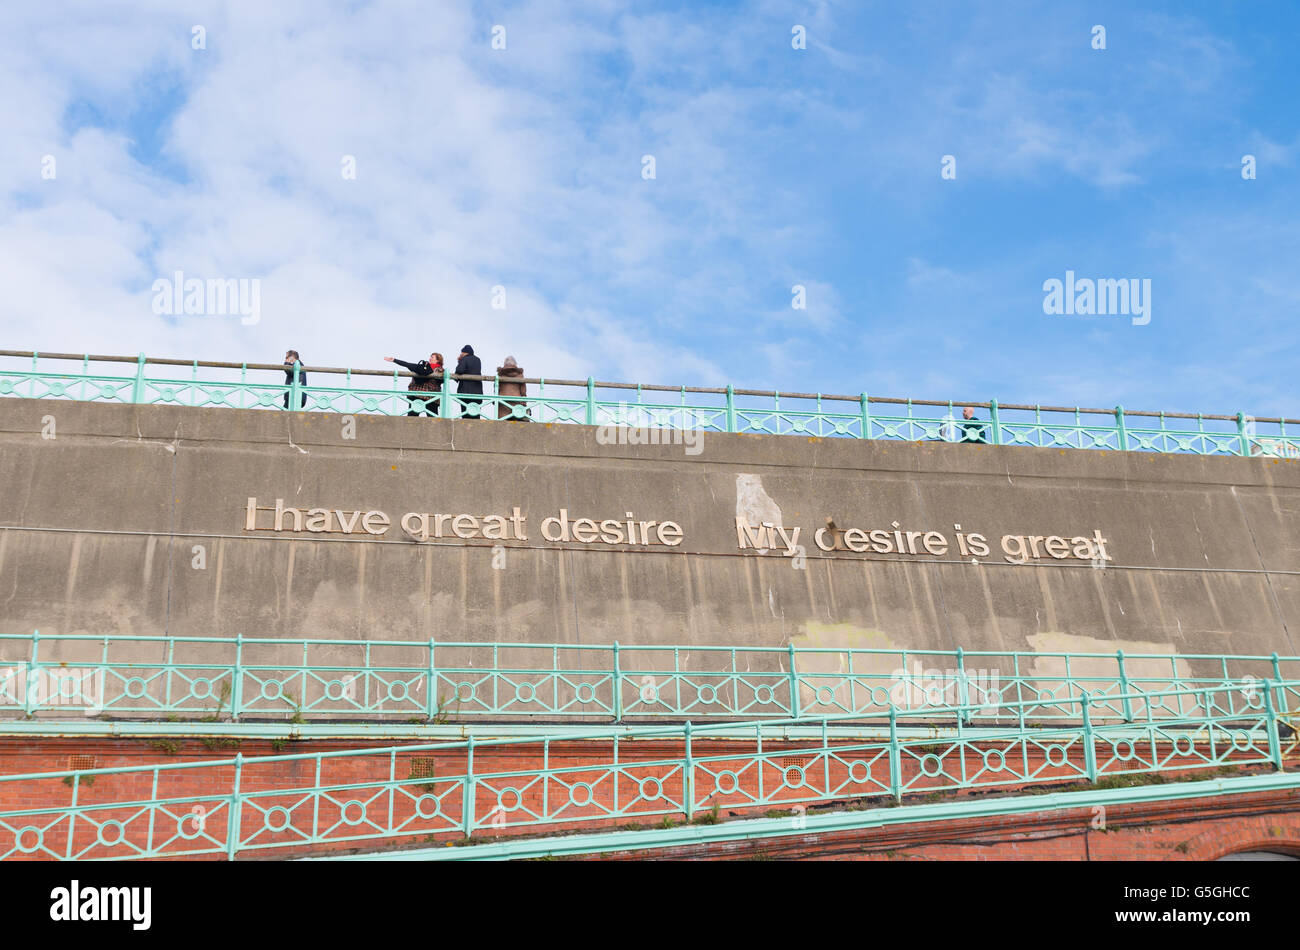 BRIGHTON, UK - 20. Oktober 2015: Meer Betonwand mit Spruch: Ich habe große Lust - mein Wunsch ist groß Stockfoto